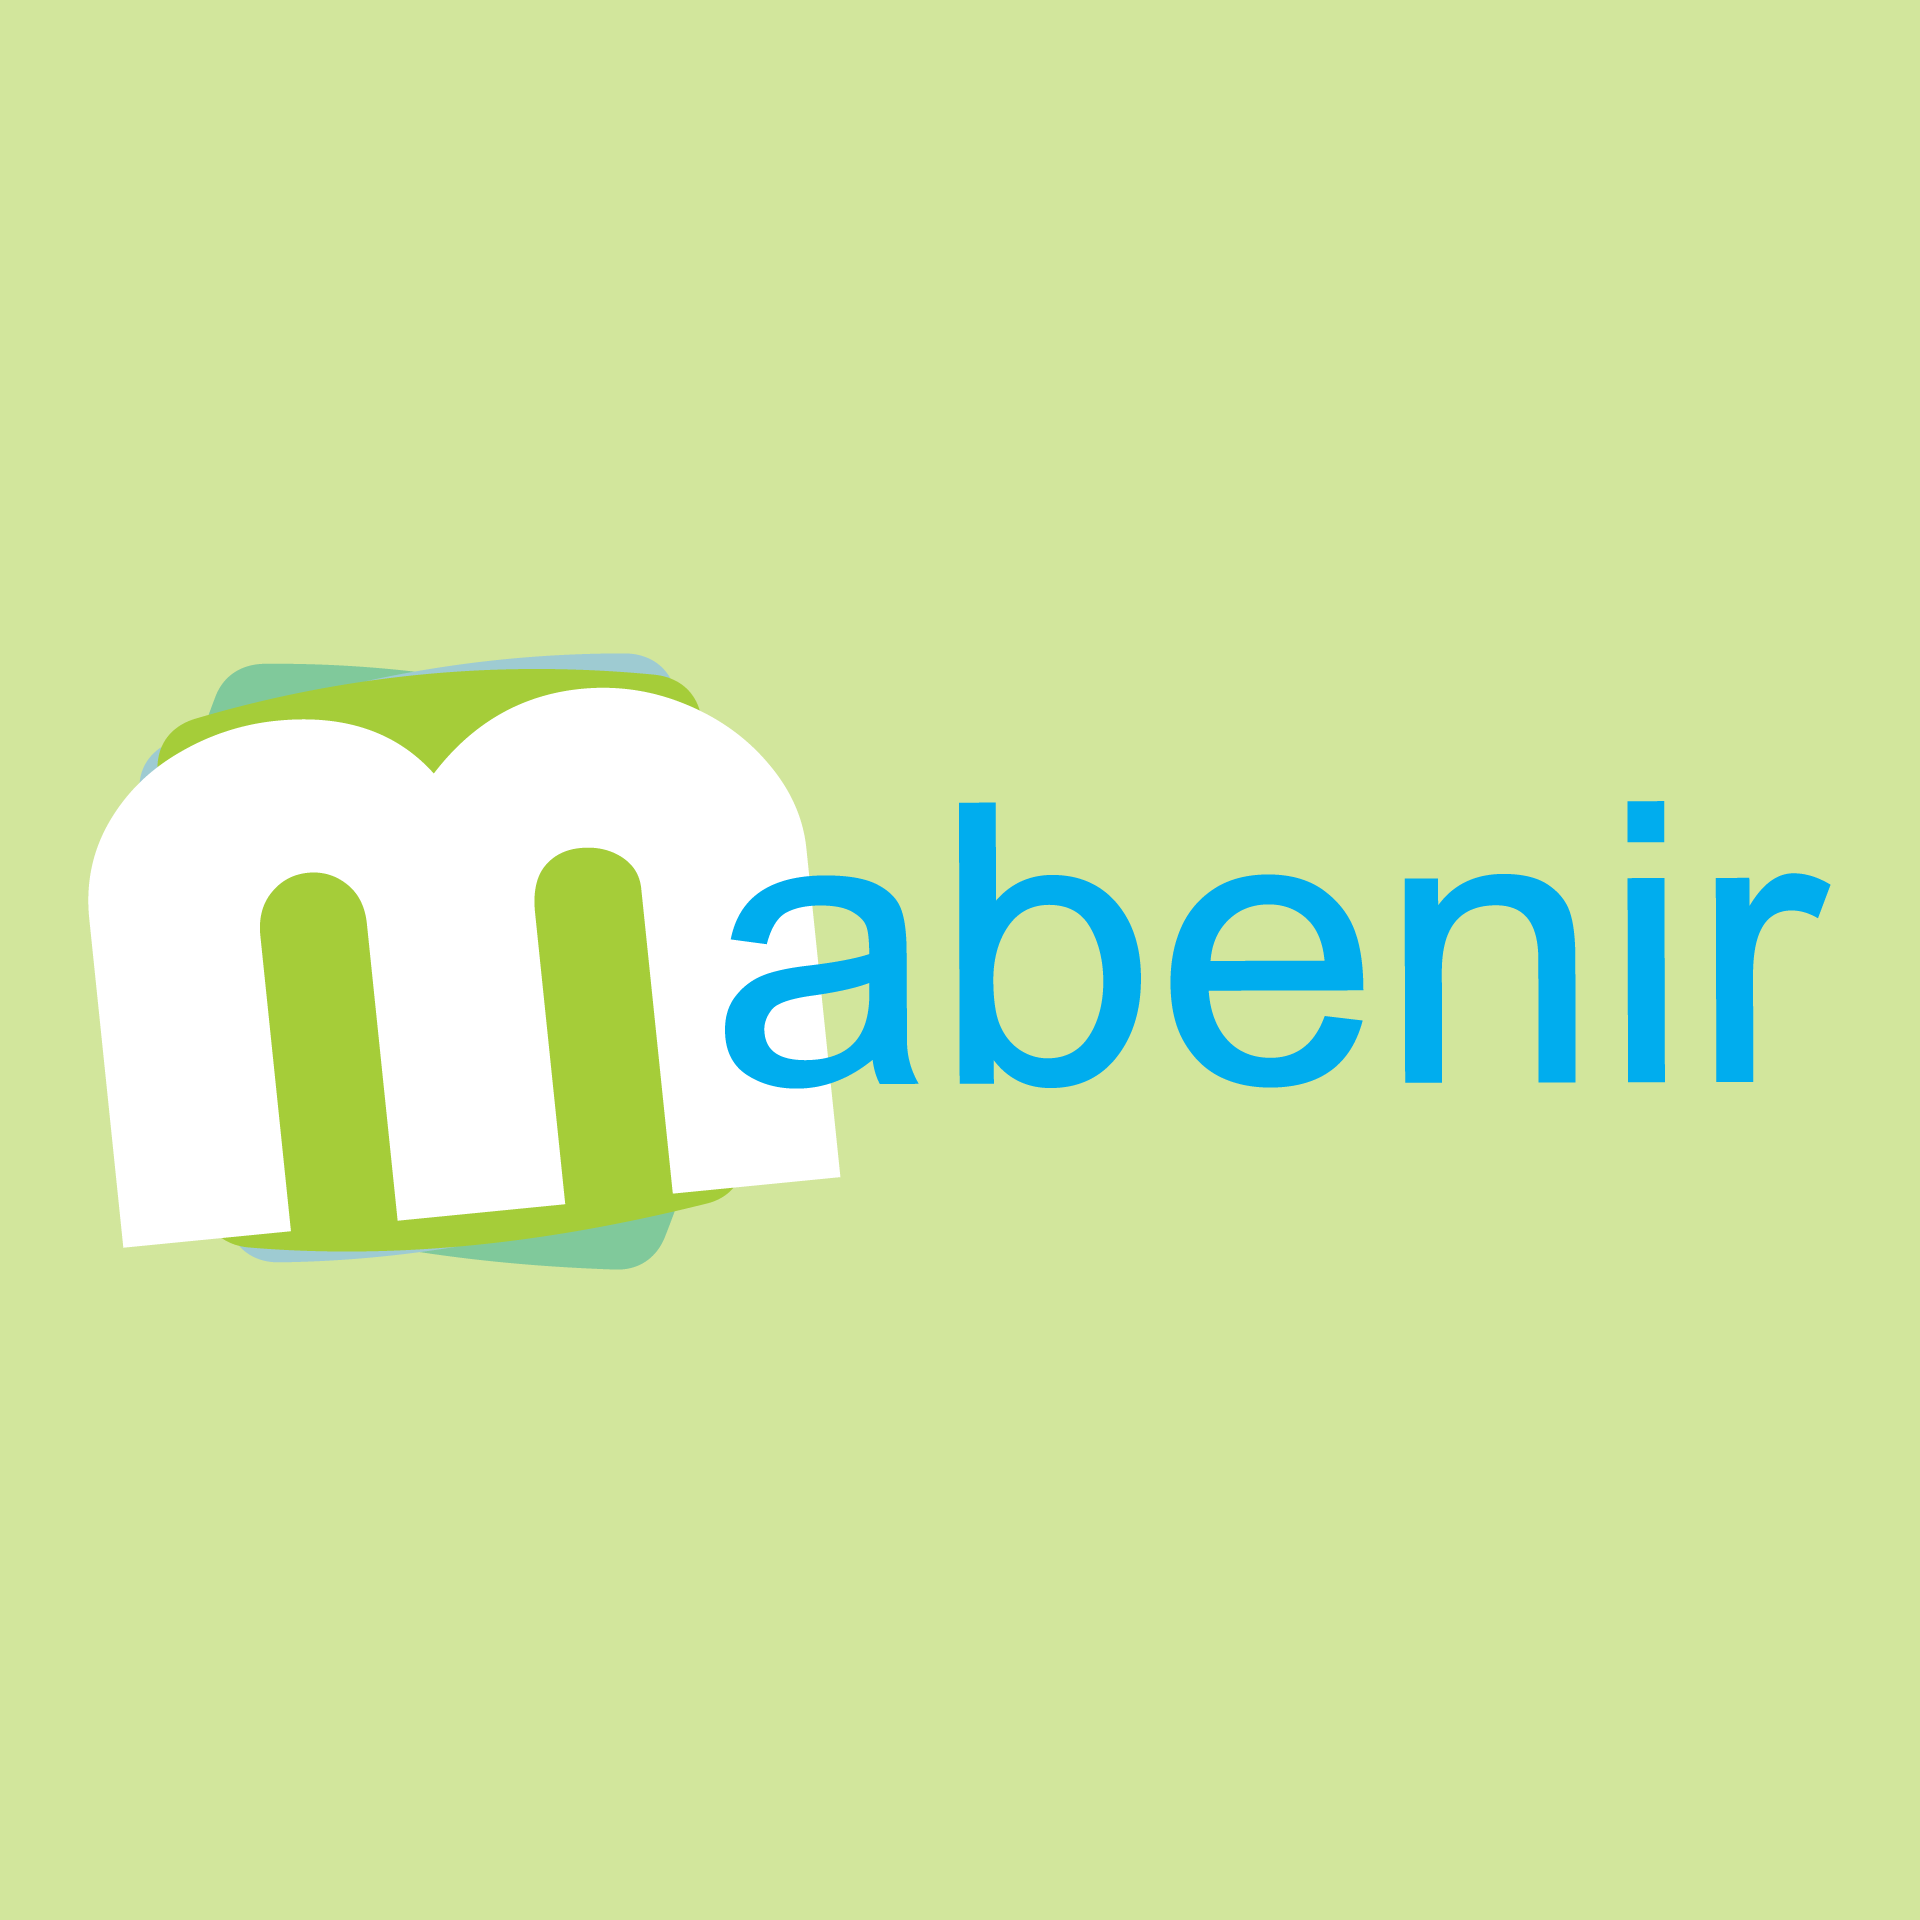 (c) Mabenir.com.uy